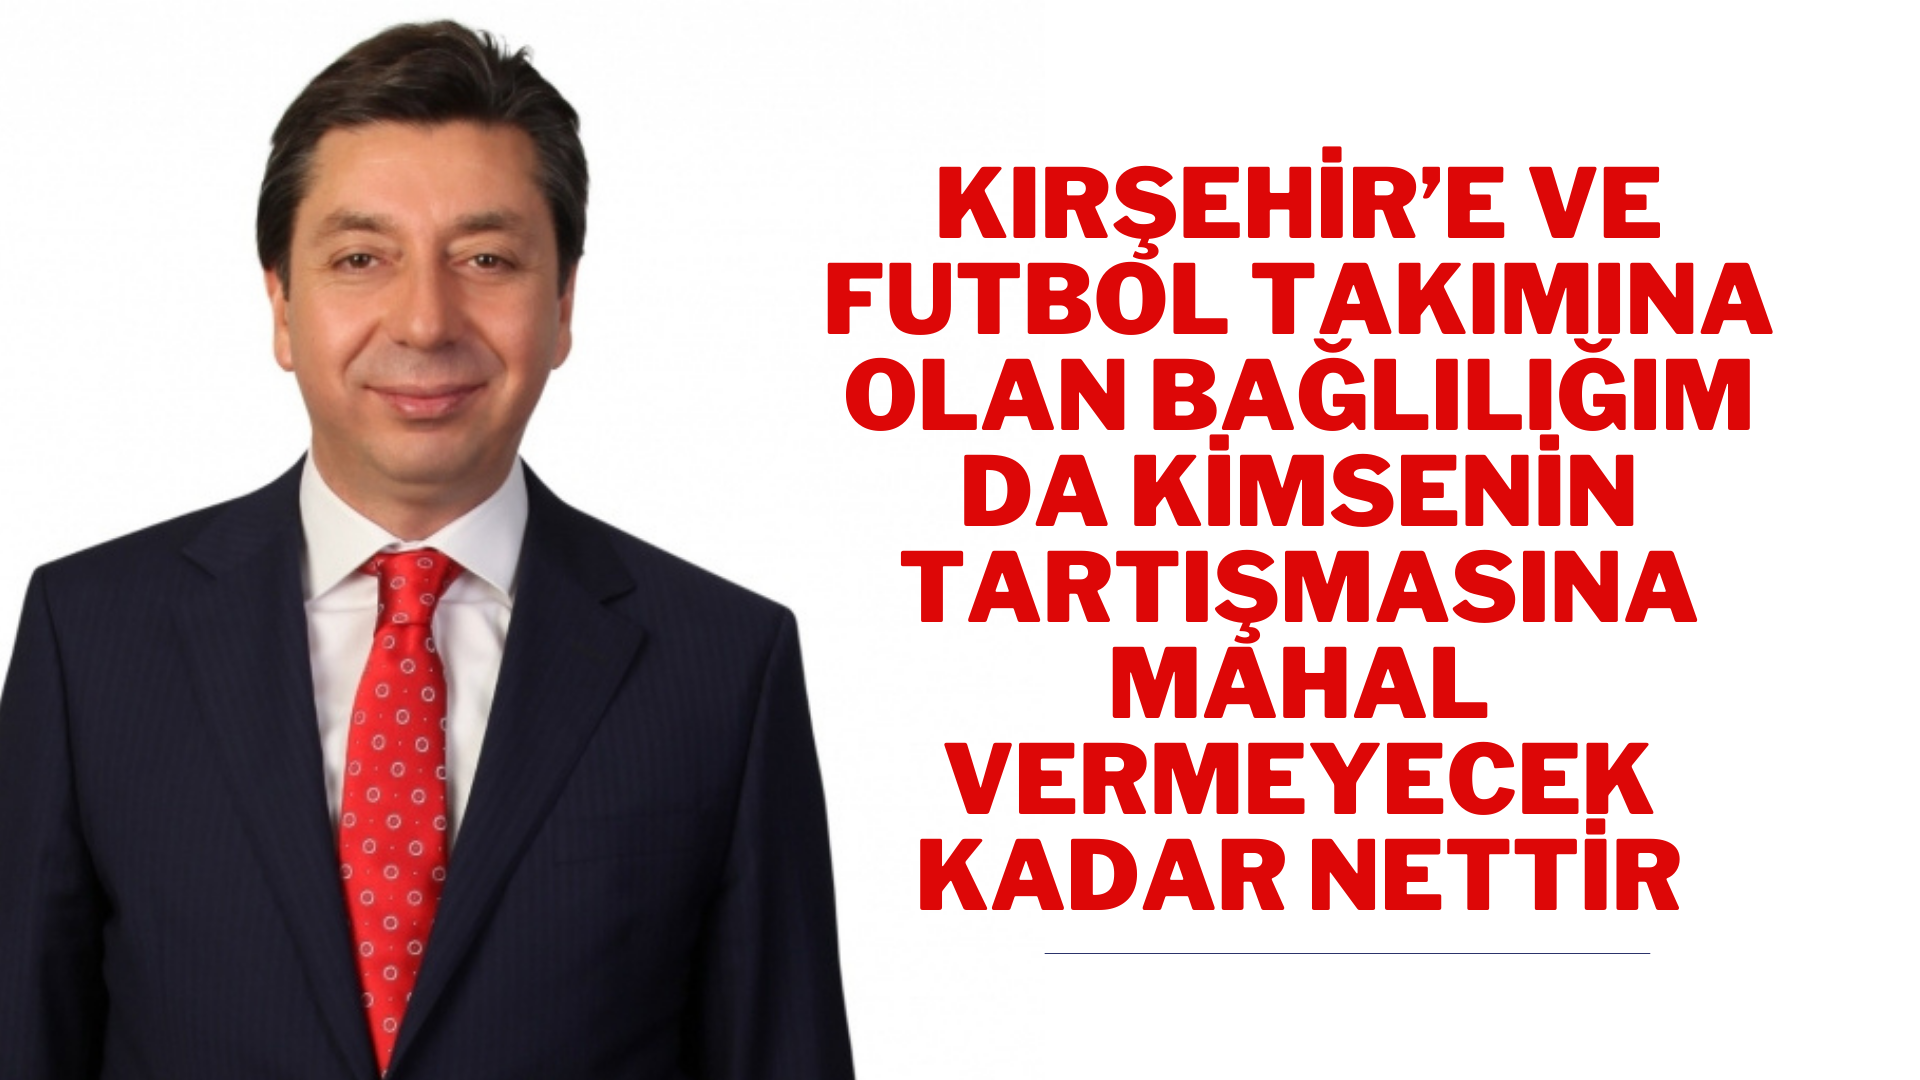 Milletvekili Kendirli’den Kırşehirspor ile ilgili açıklama